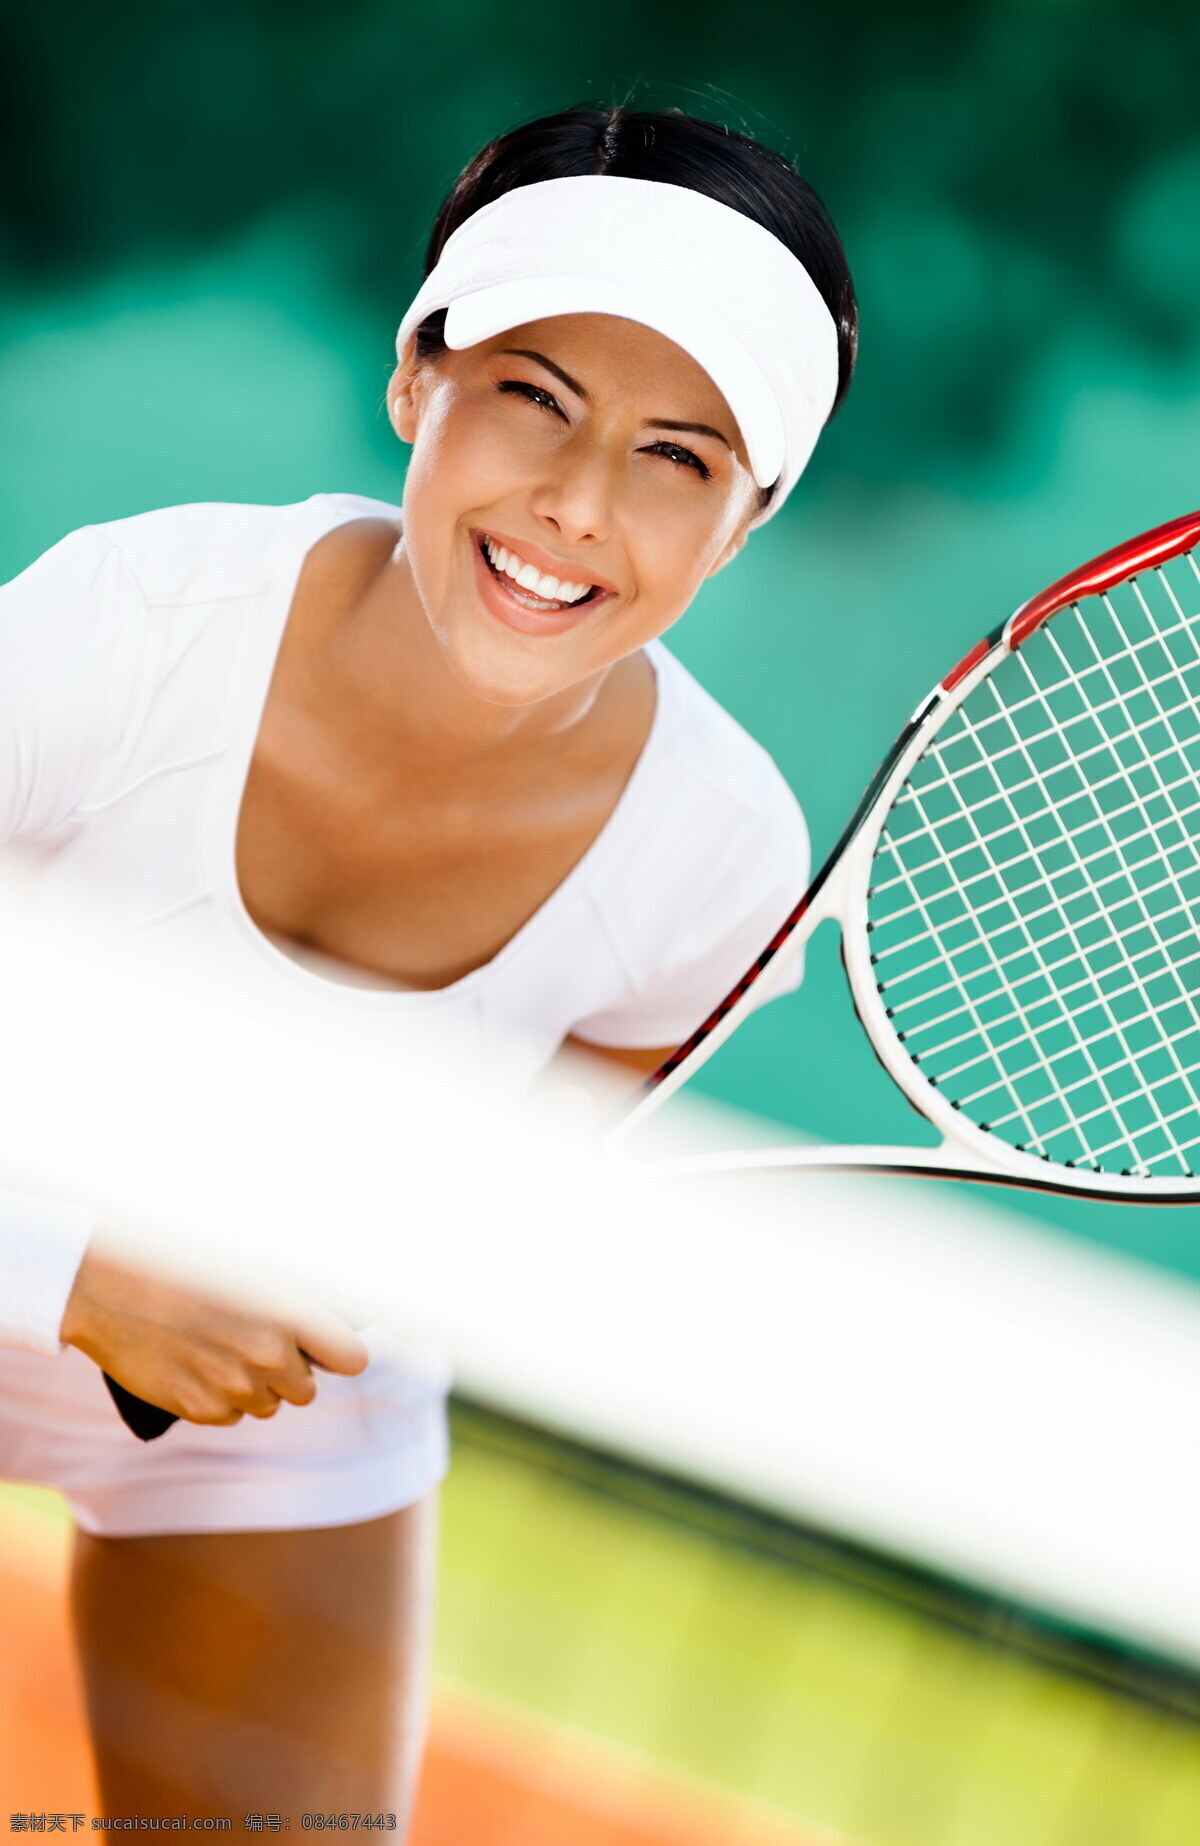 网球 运动员 特写 美女运动员 女子网球 网球运动 体育运动 生活百科